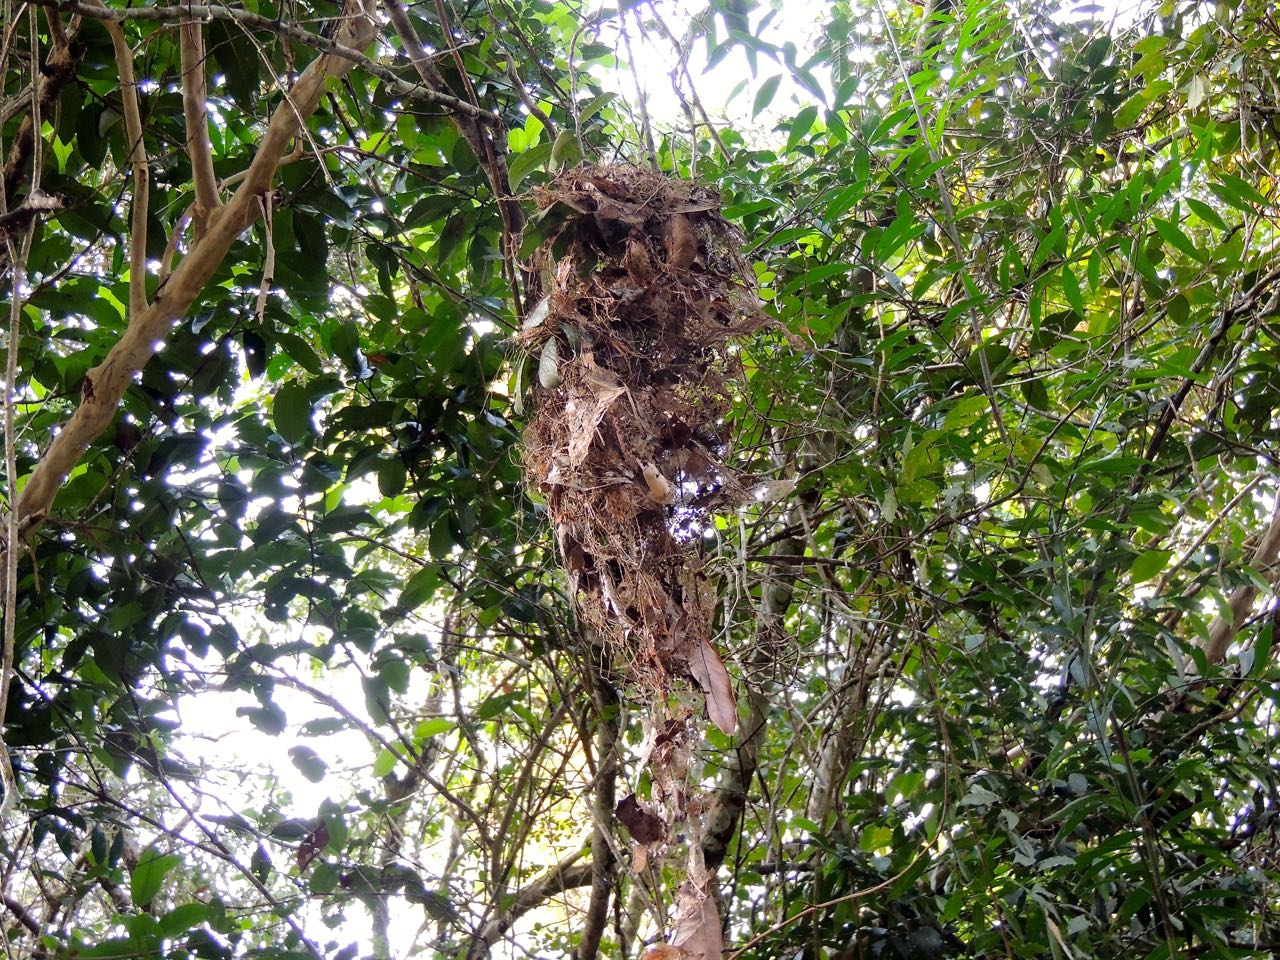 Northern Royal Flycatcher nest